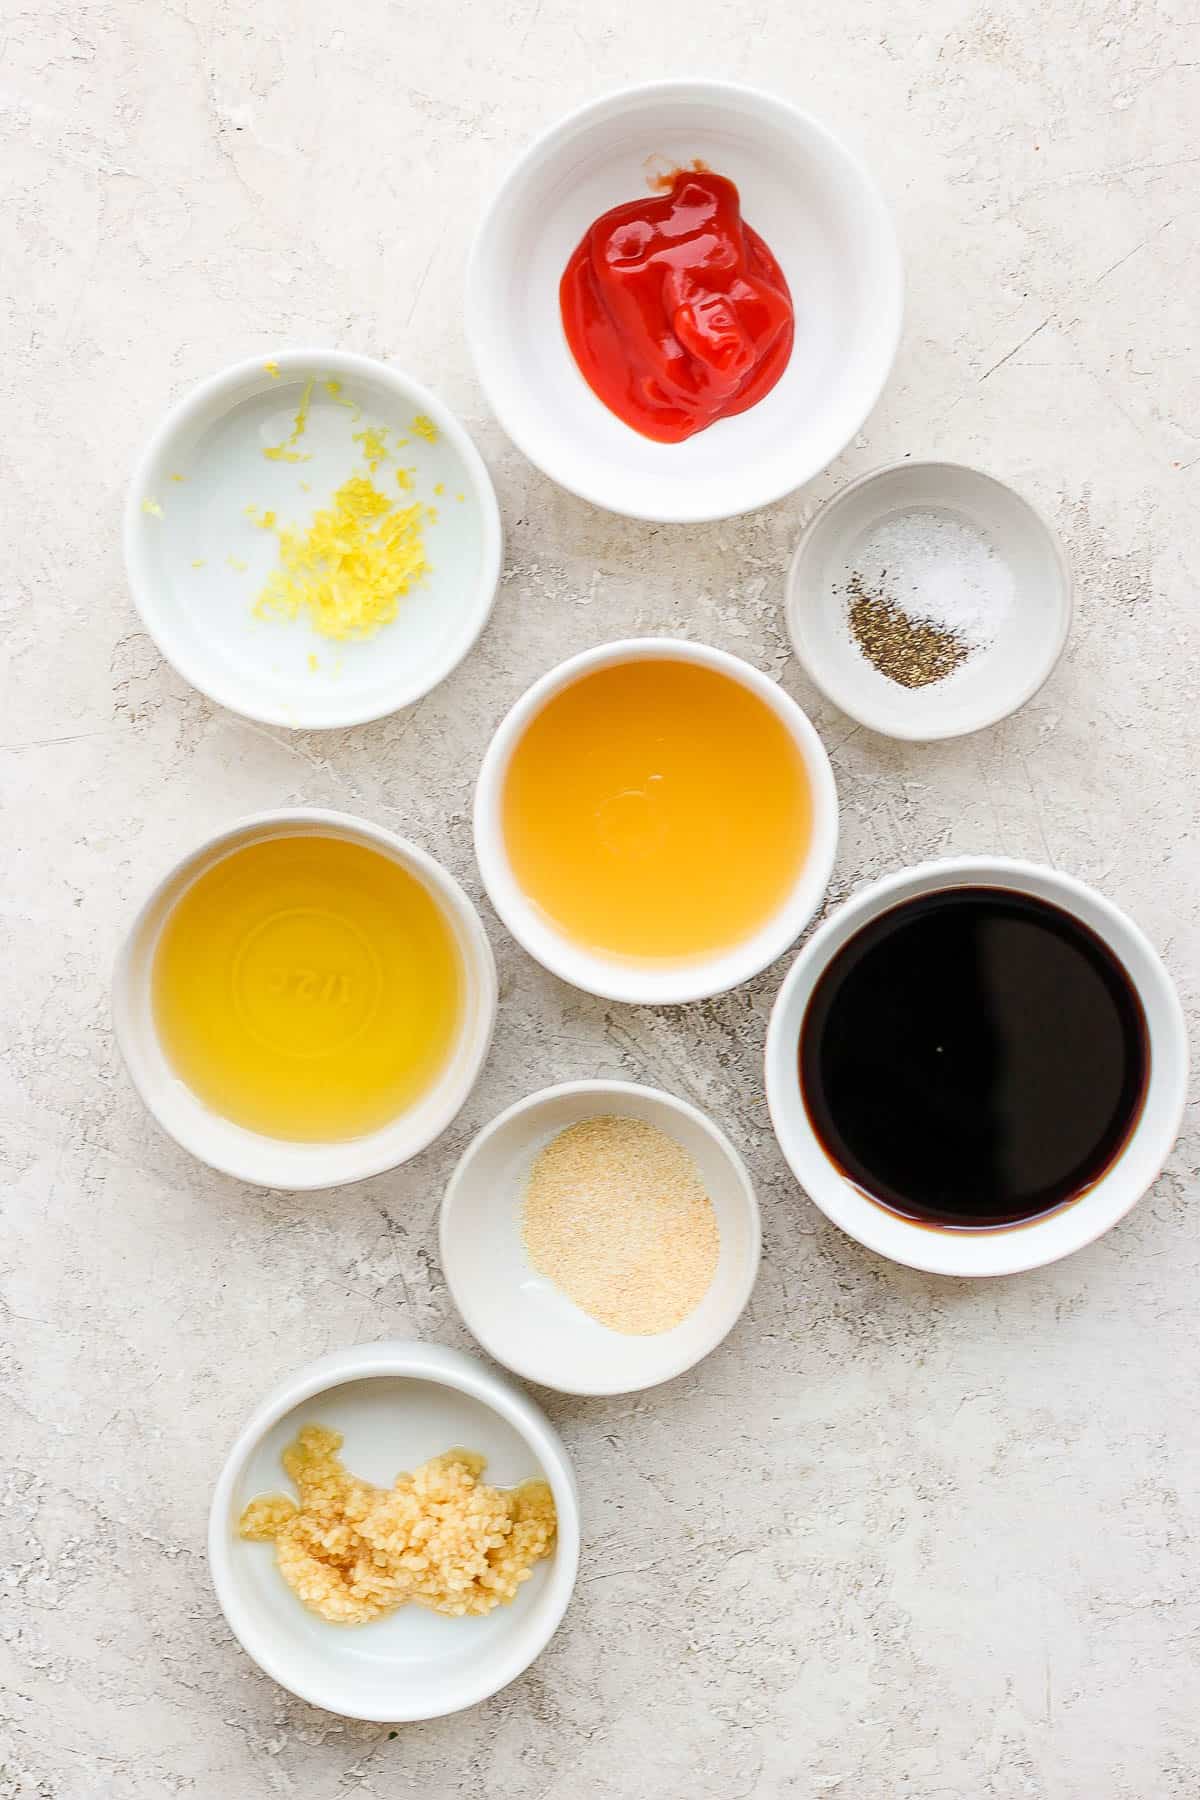 Rib marinade ingredients in separate bowls.